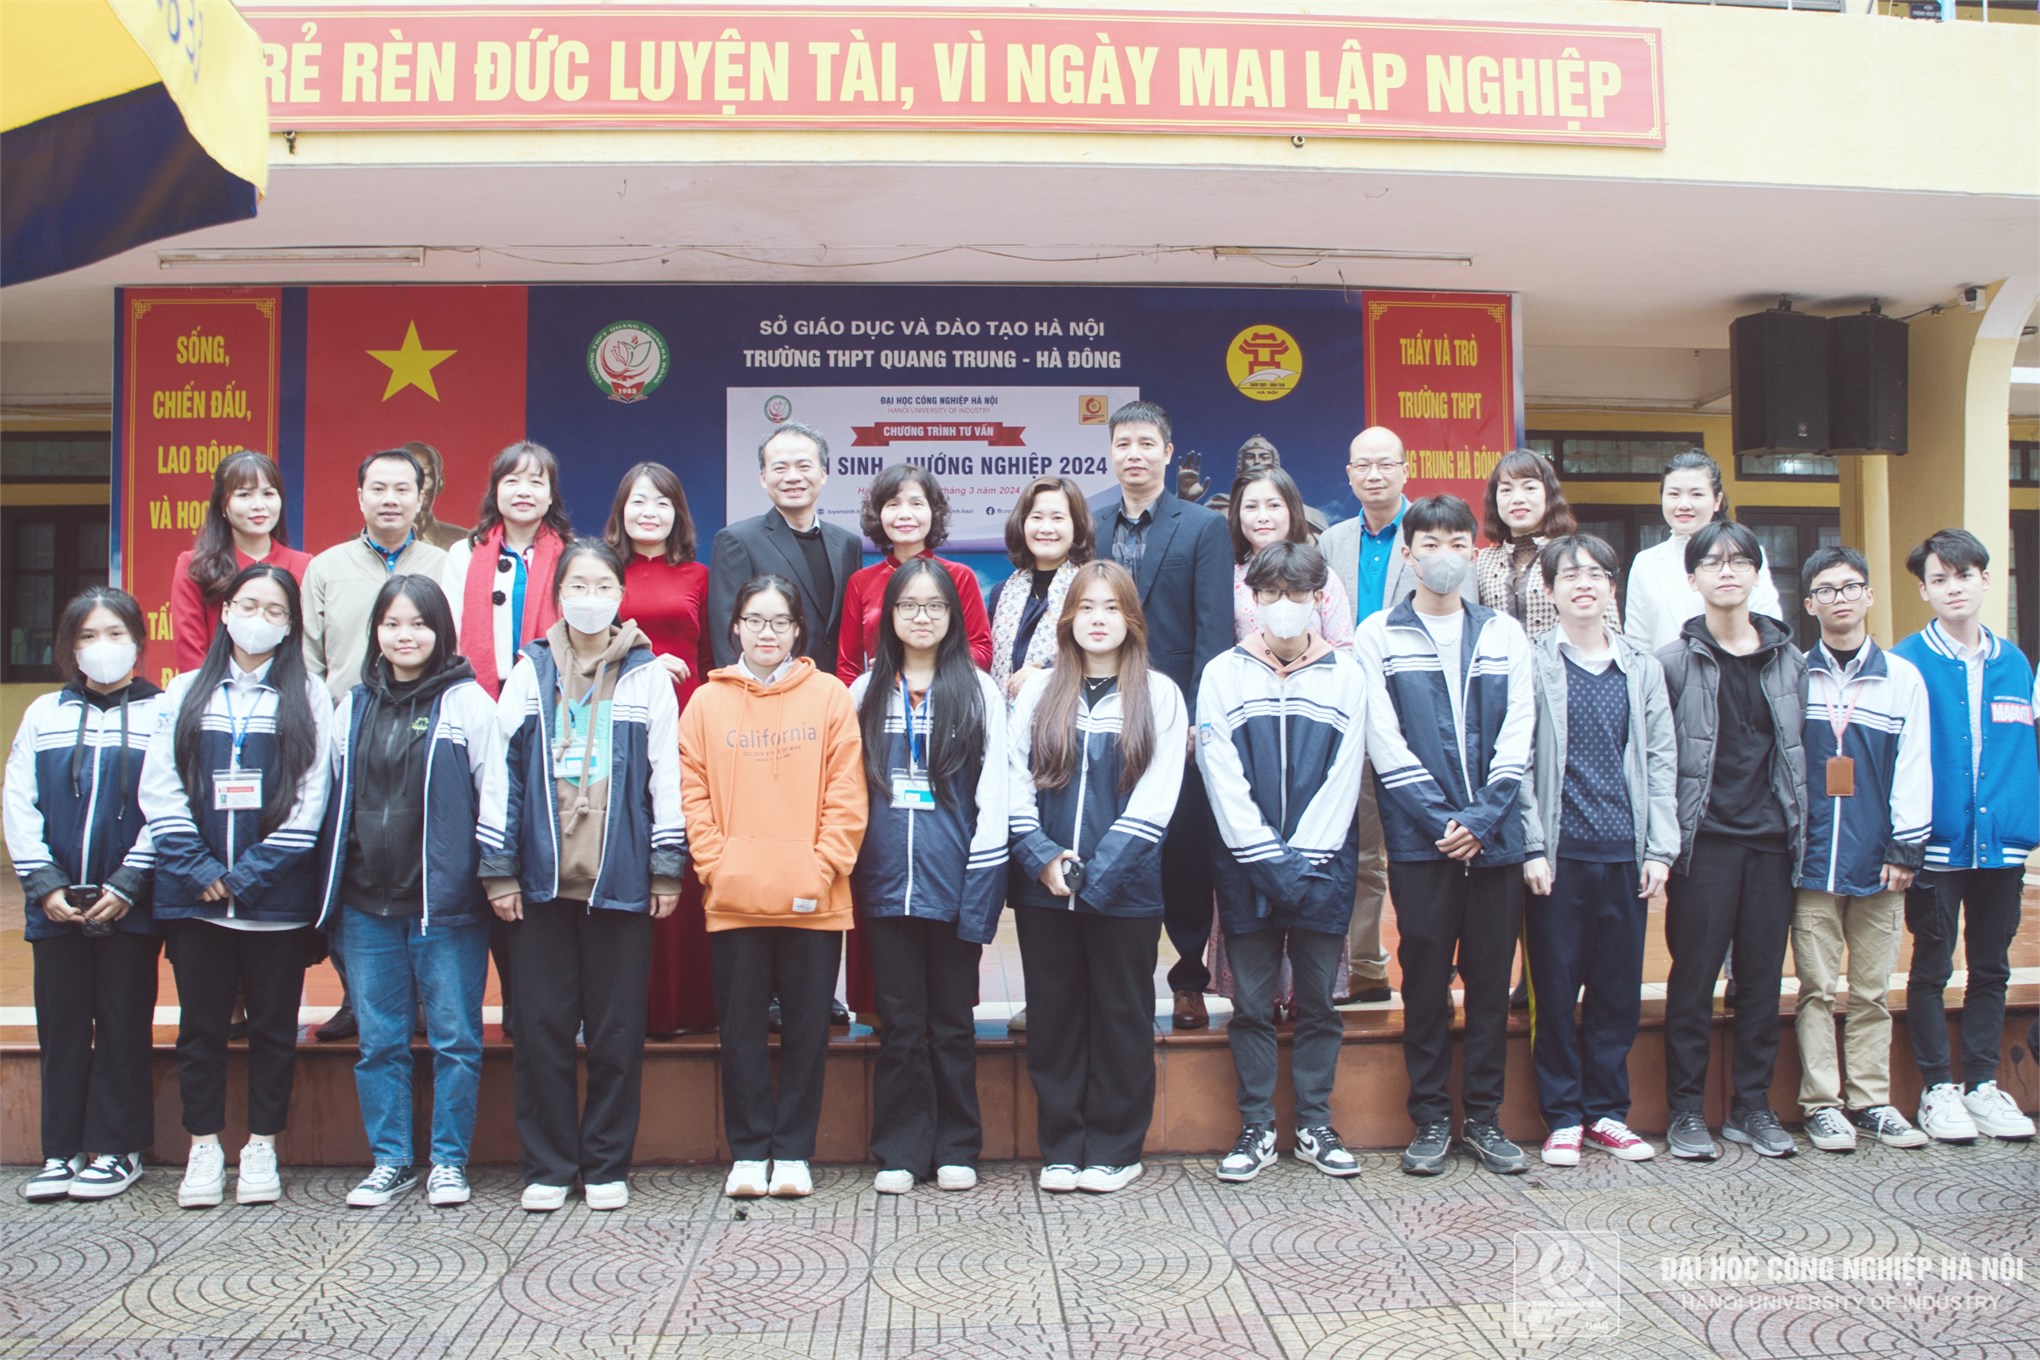 HaUI định hướng nghề nghiệp cho học sinh khối 12 Trường THPT Quang Trung - Hà Đông